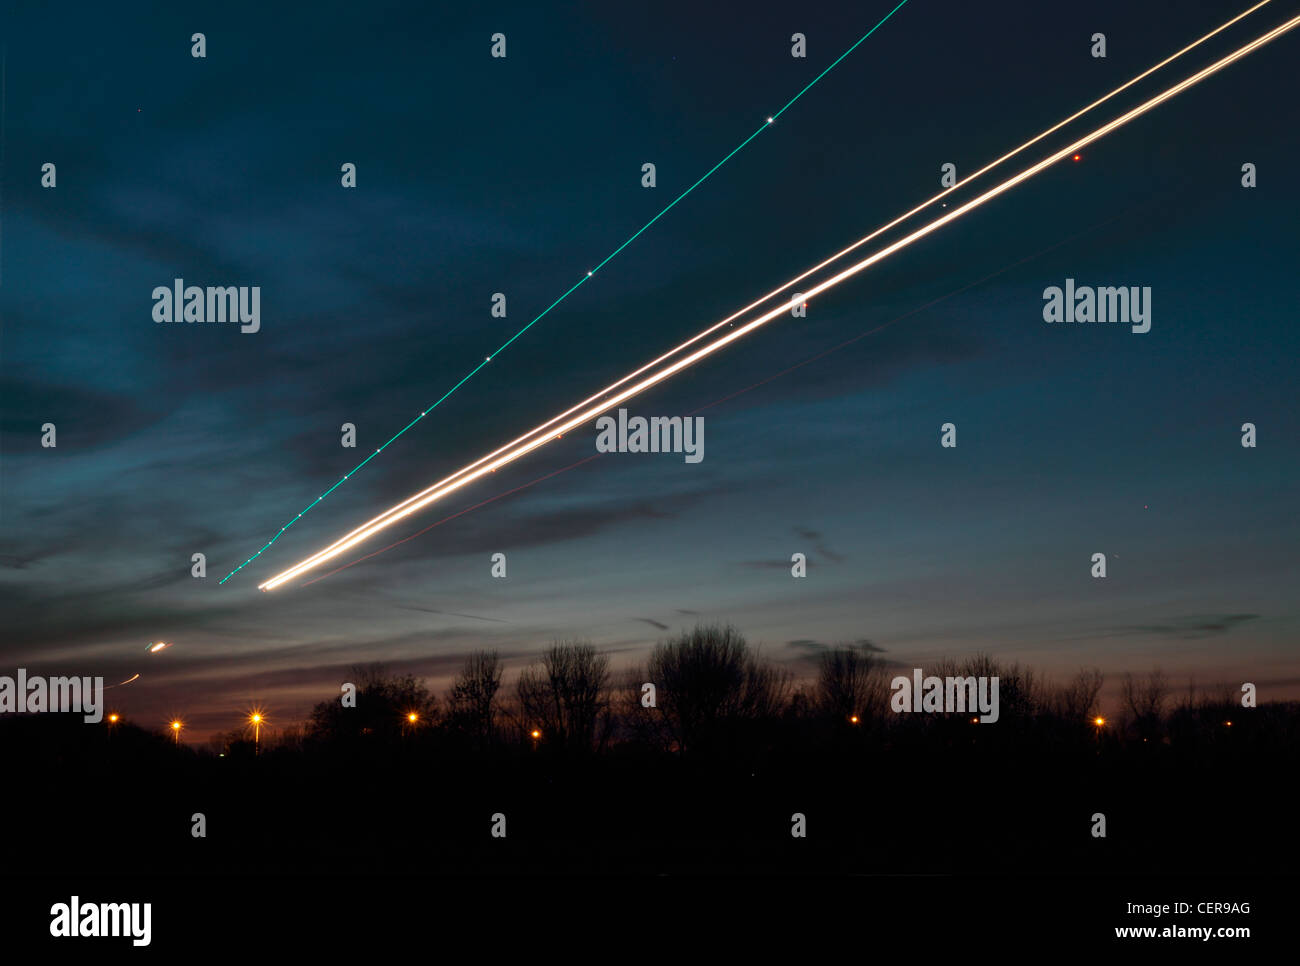 Sendero Luminoso desde aviones que van a aterrizar en el aeropuerto de Heathrow al anochecer. Foto de stock